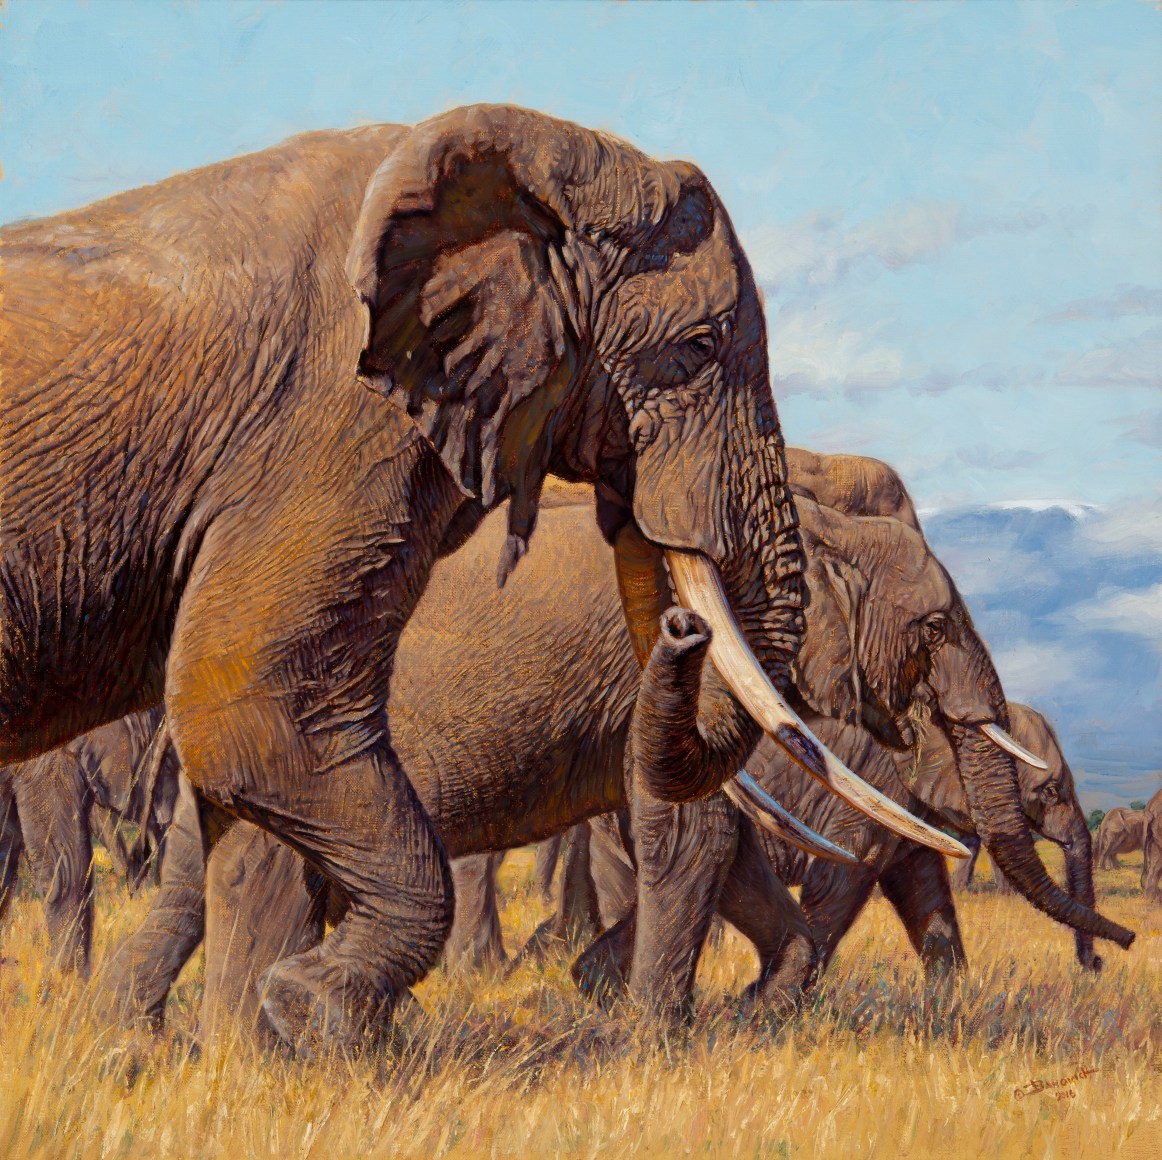 Animal johns. Цвета доисторических животных. Джон животное. Фотографии доисторических стран слонов. У африканского слона пенис достигает 2-х метров рисунок.